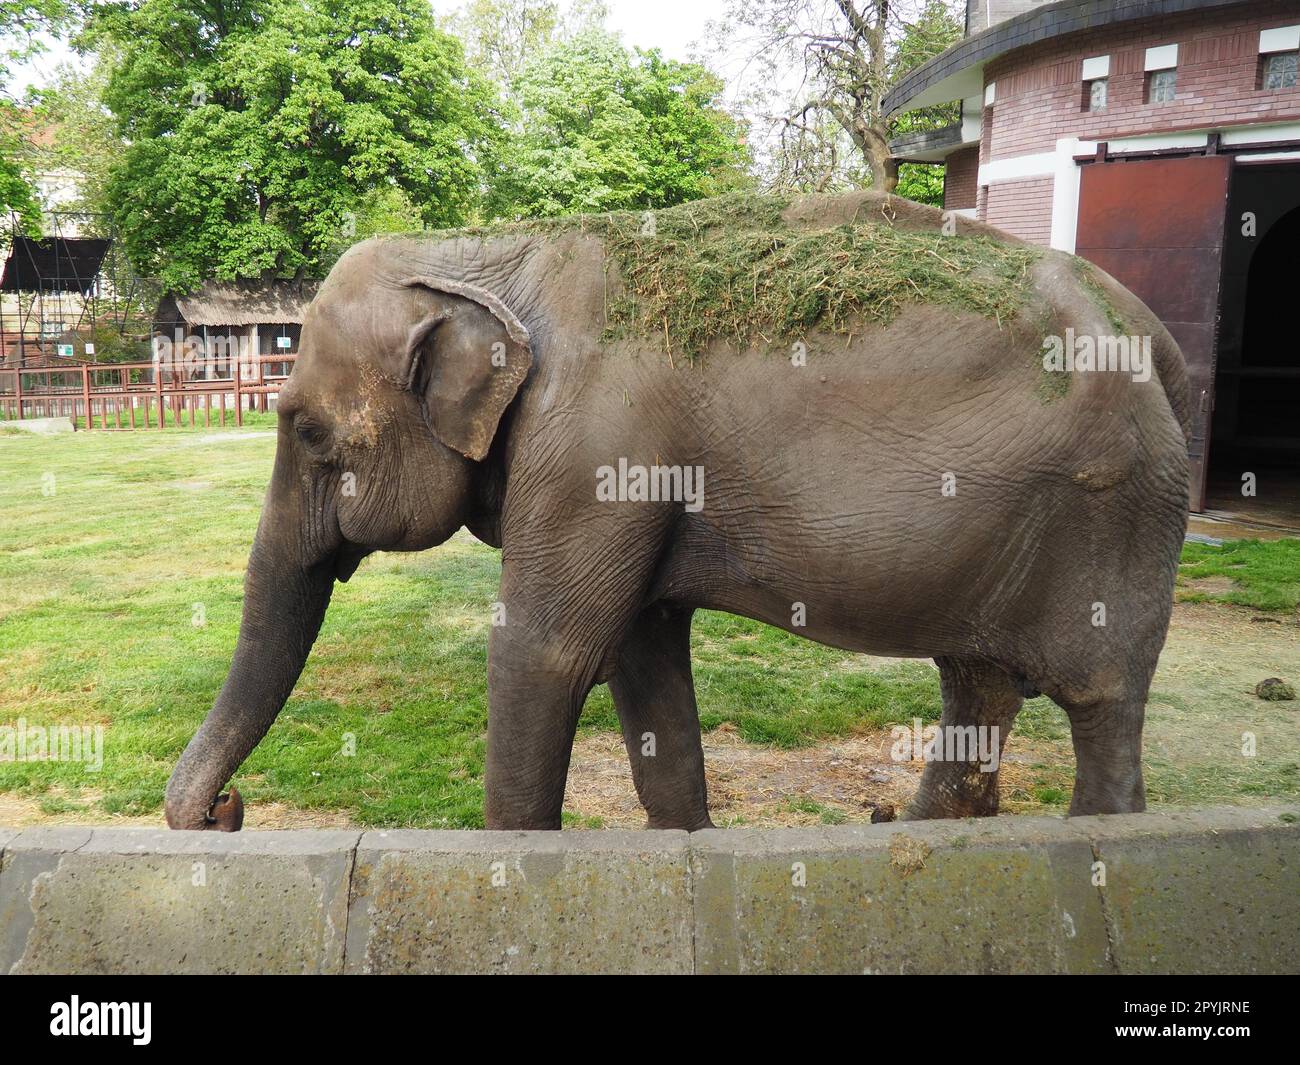 L'elefante asiatico, o elefante indiano, Elephas maximus è un mammifero dell'ordine Proboscis, un genere di elefanti asiatici Elephas e una delle tre specie moderne della famiglia degli elefanti. Passeggiate con gli elefanti Foto Stock